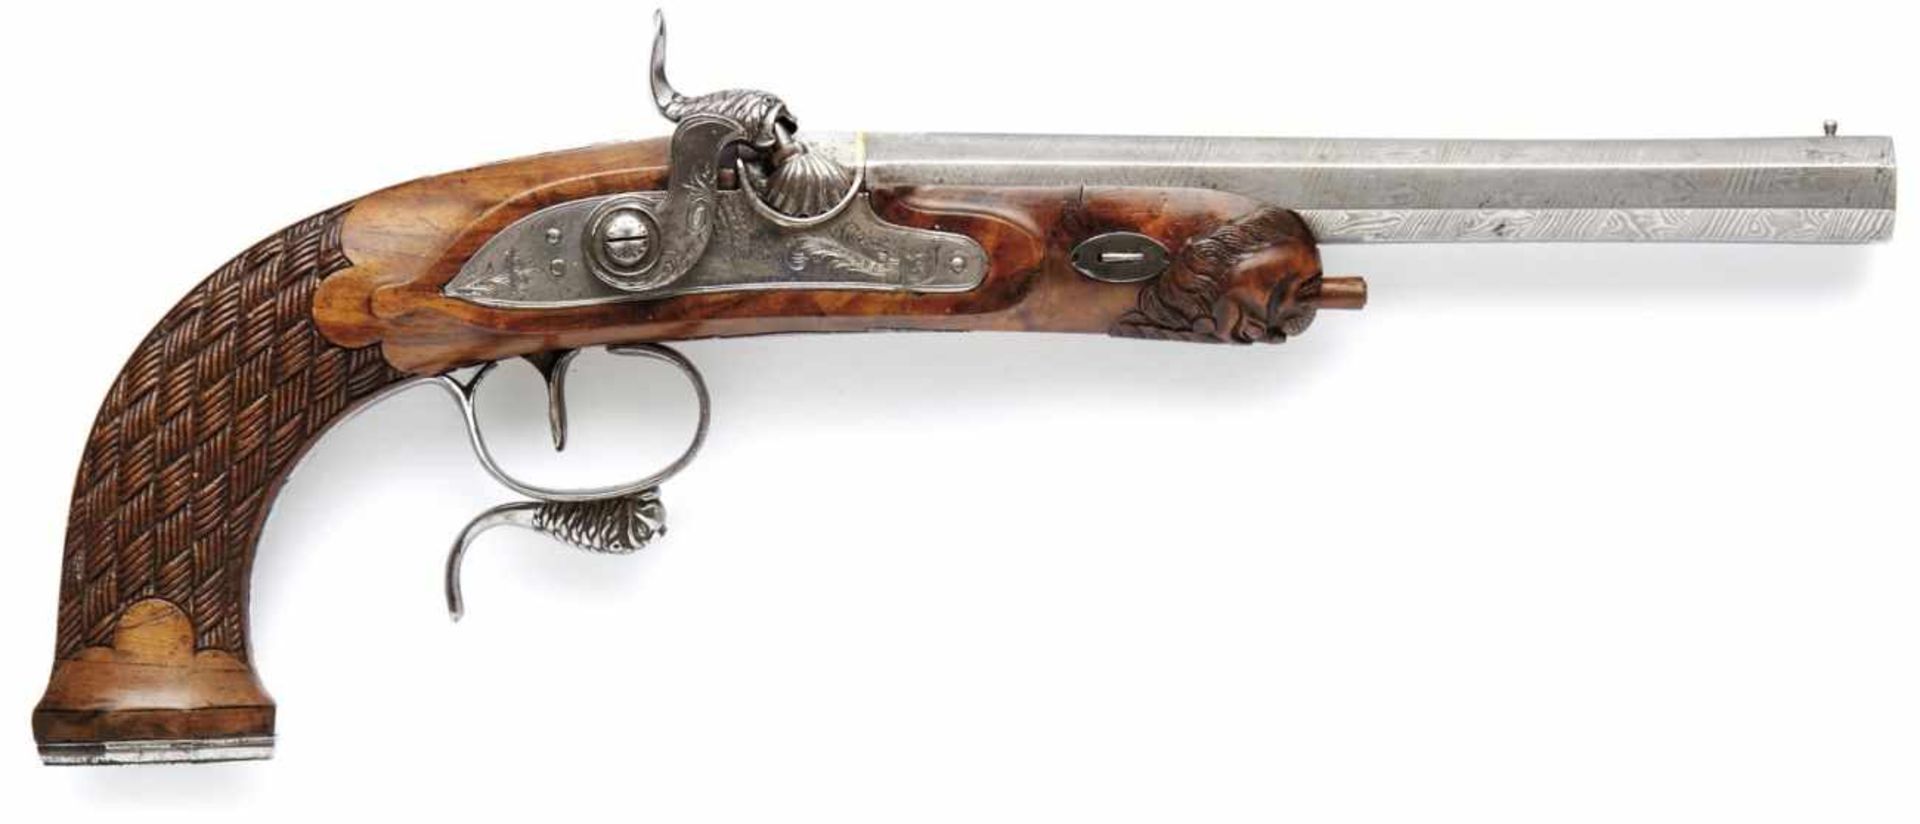 Ausgefallene Perkussionspistole Wohl England, um 1840 Nussholzhalbschaft, vorn ein plastischer